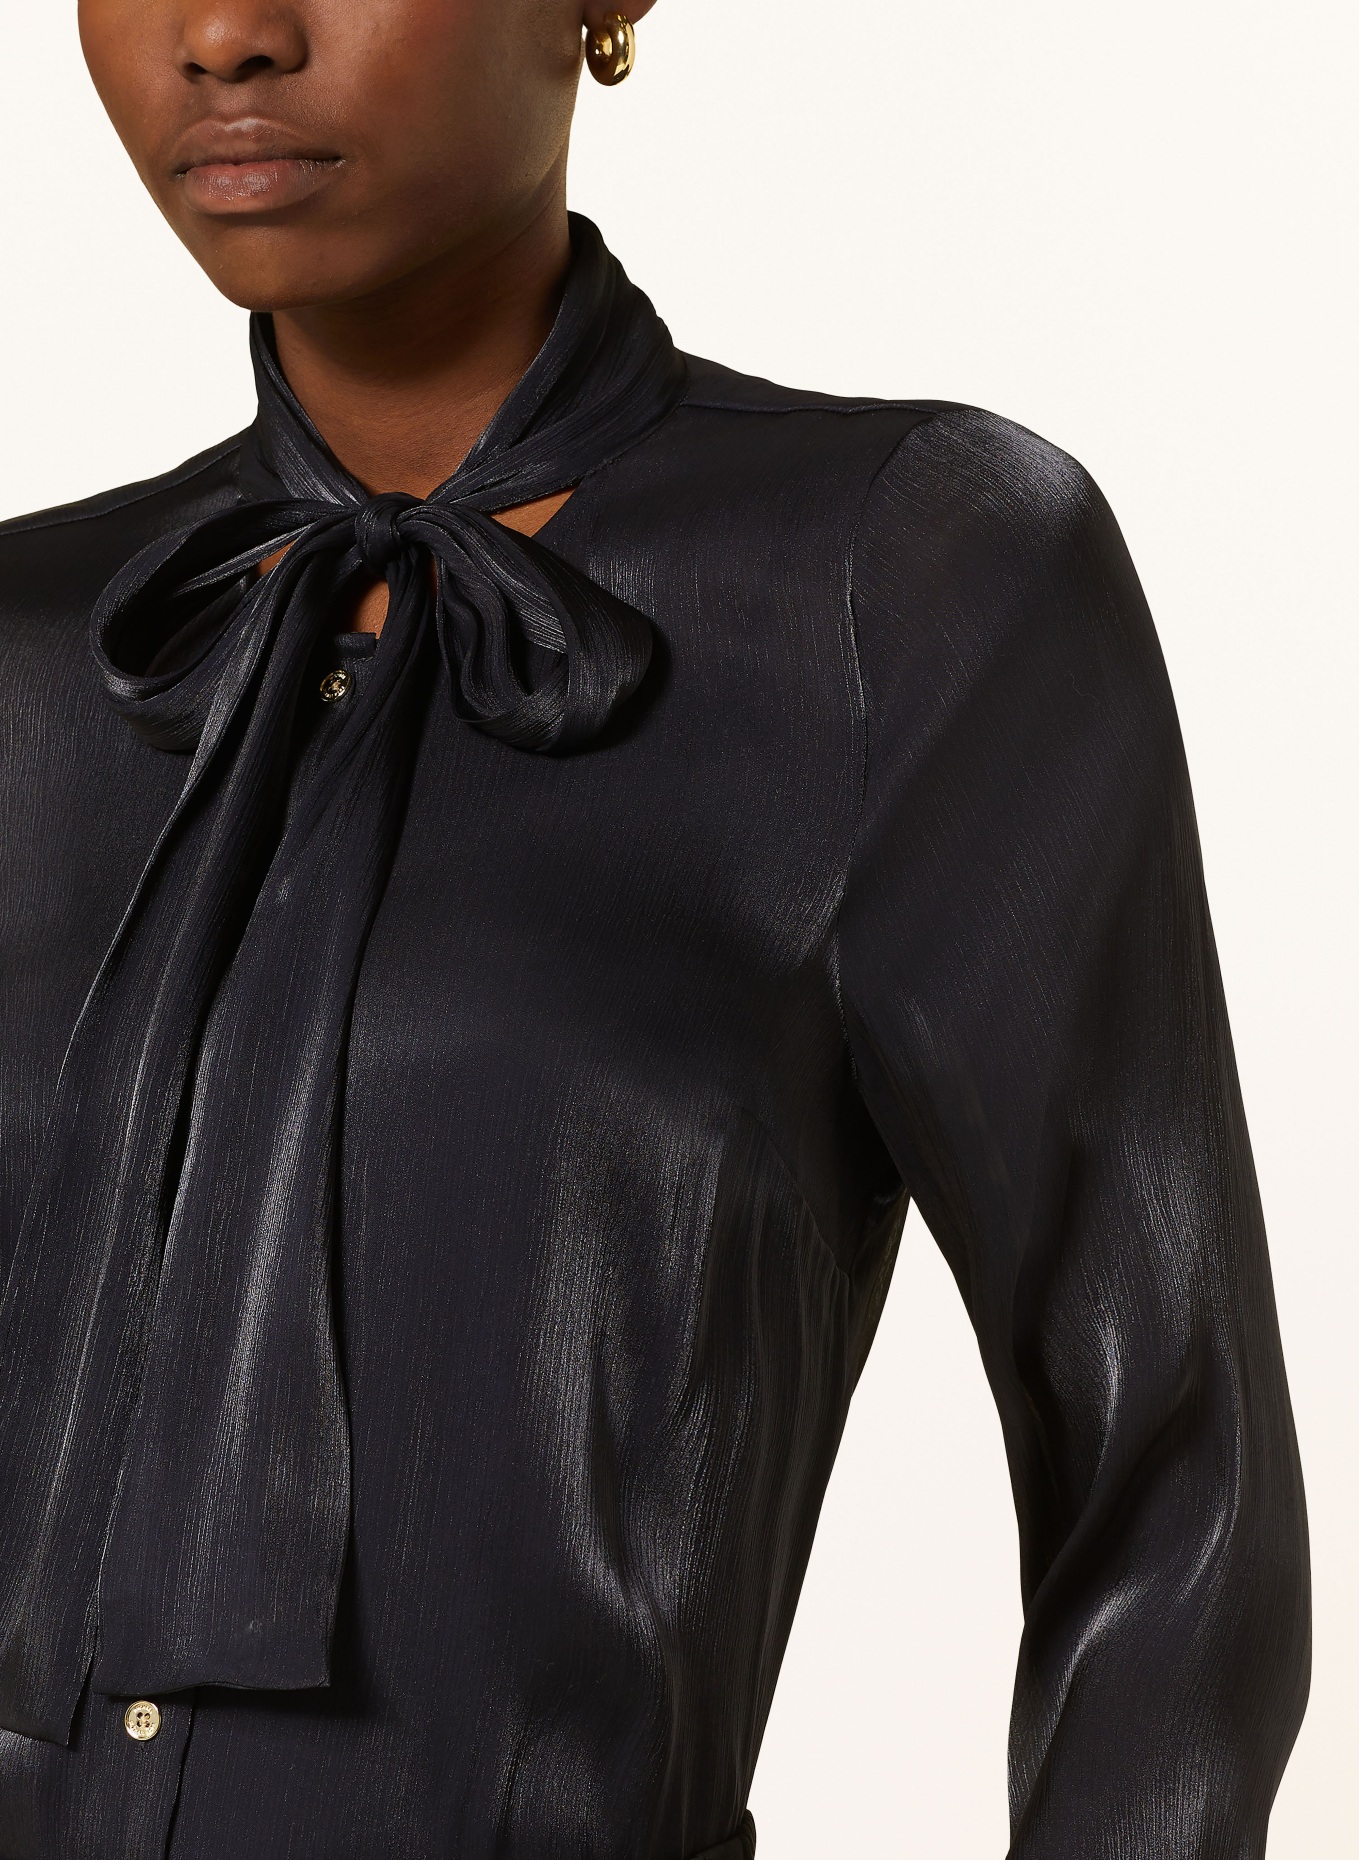 MICHAEL KORS Satin bow-tie blouse, Color: BLACK (Image 4)